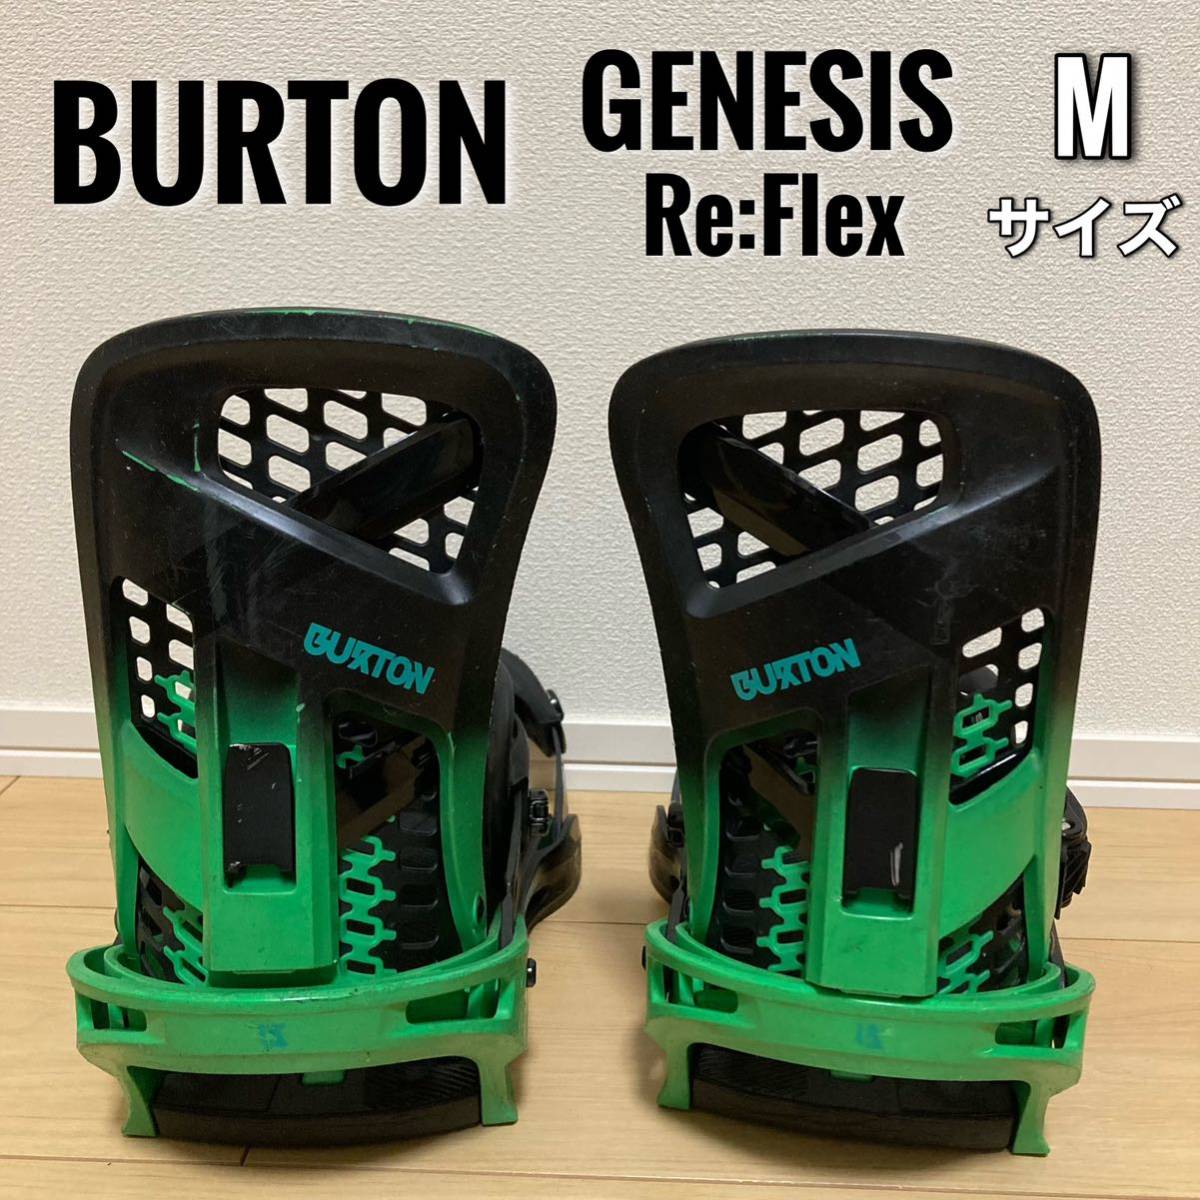 正規逆輸入品】 BURTON GENESIS Re:Flex Mサイズ バートン ジェネシス